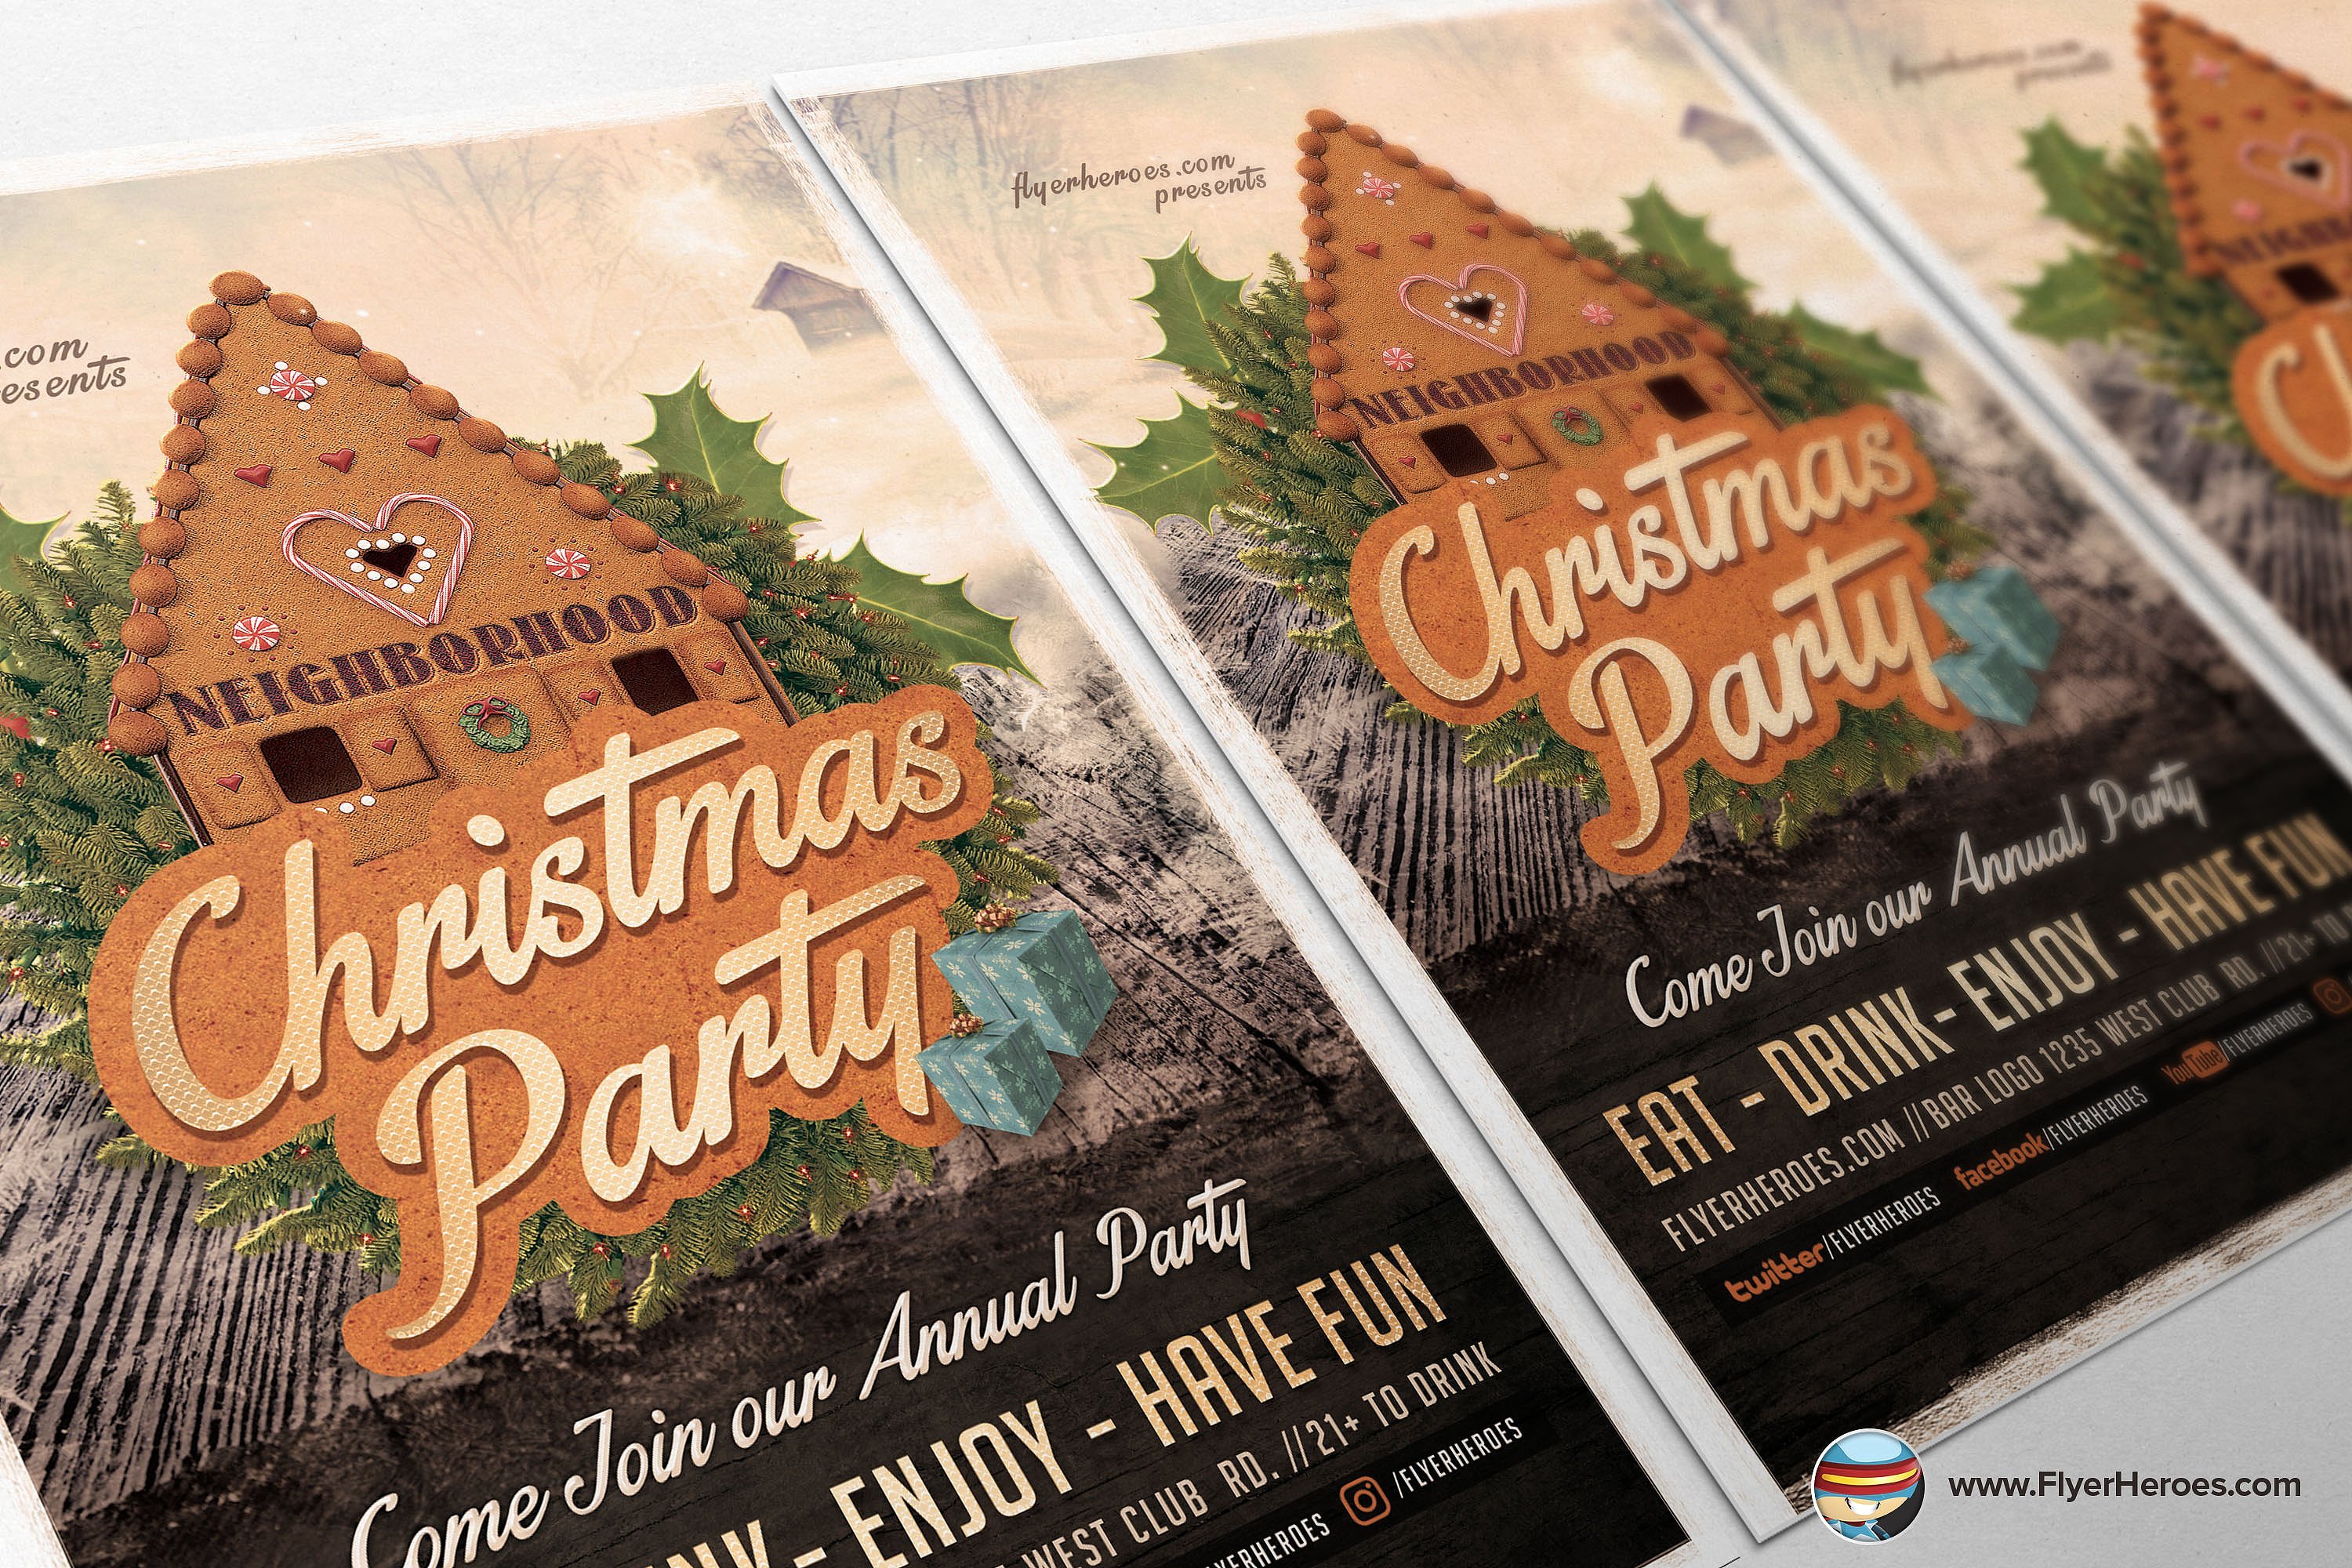 高级邻居圣诞晚会Photoshop海报模板 Neighborhood Christmas Party Flyer Template插图3